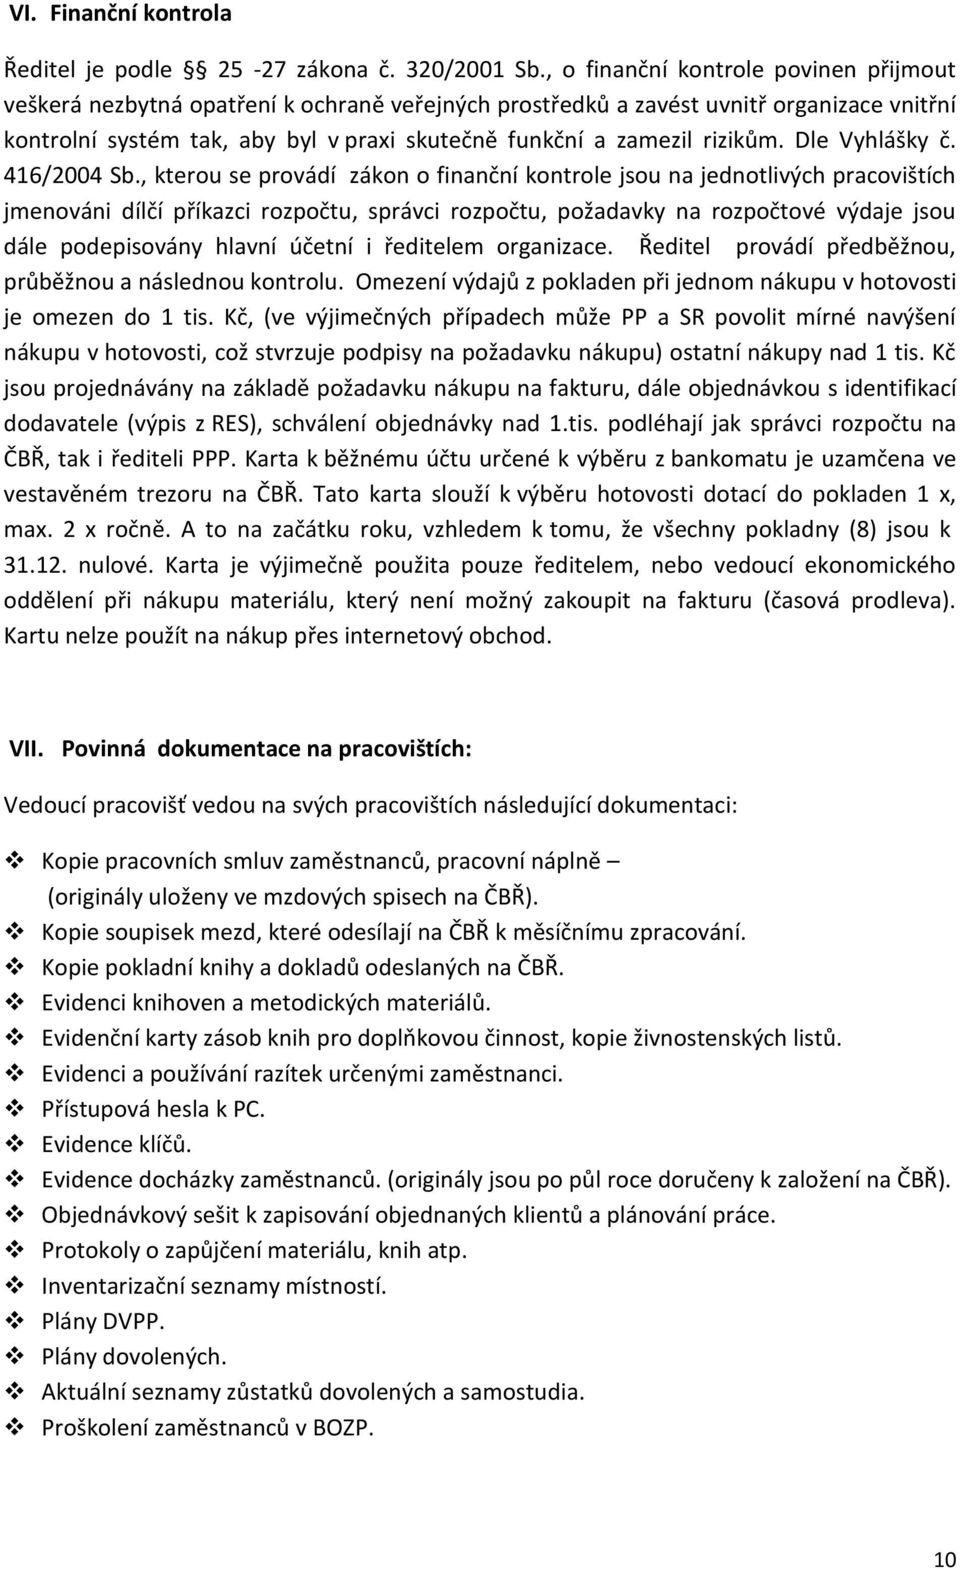 rizikům. Dle Vyhlášky č. 416/2004 Sb.